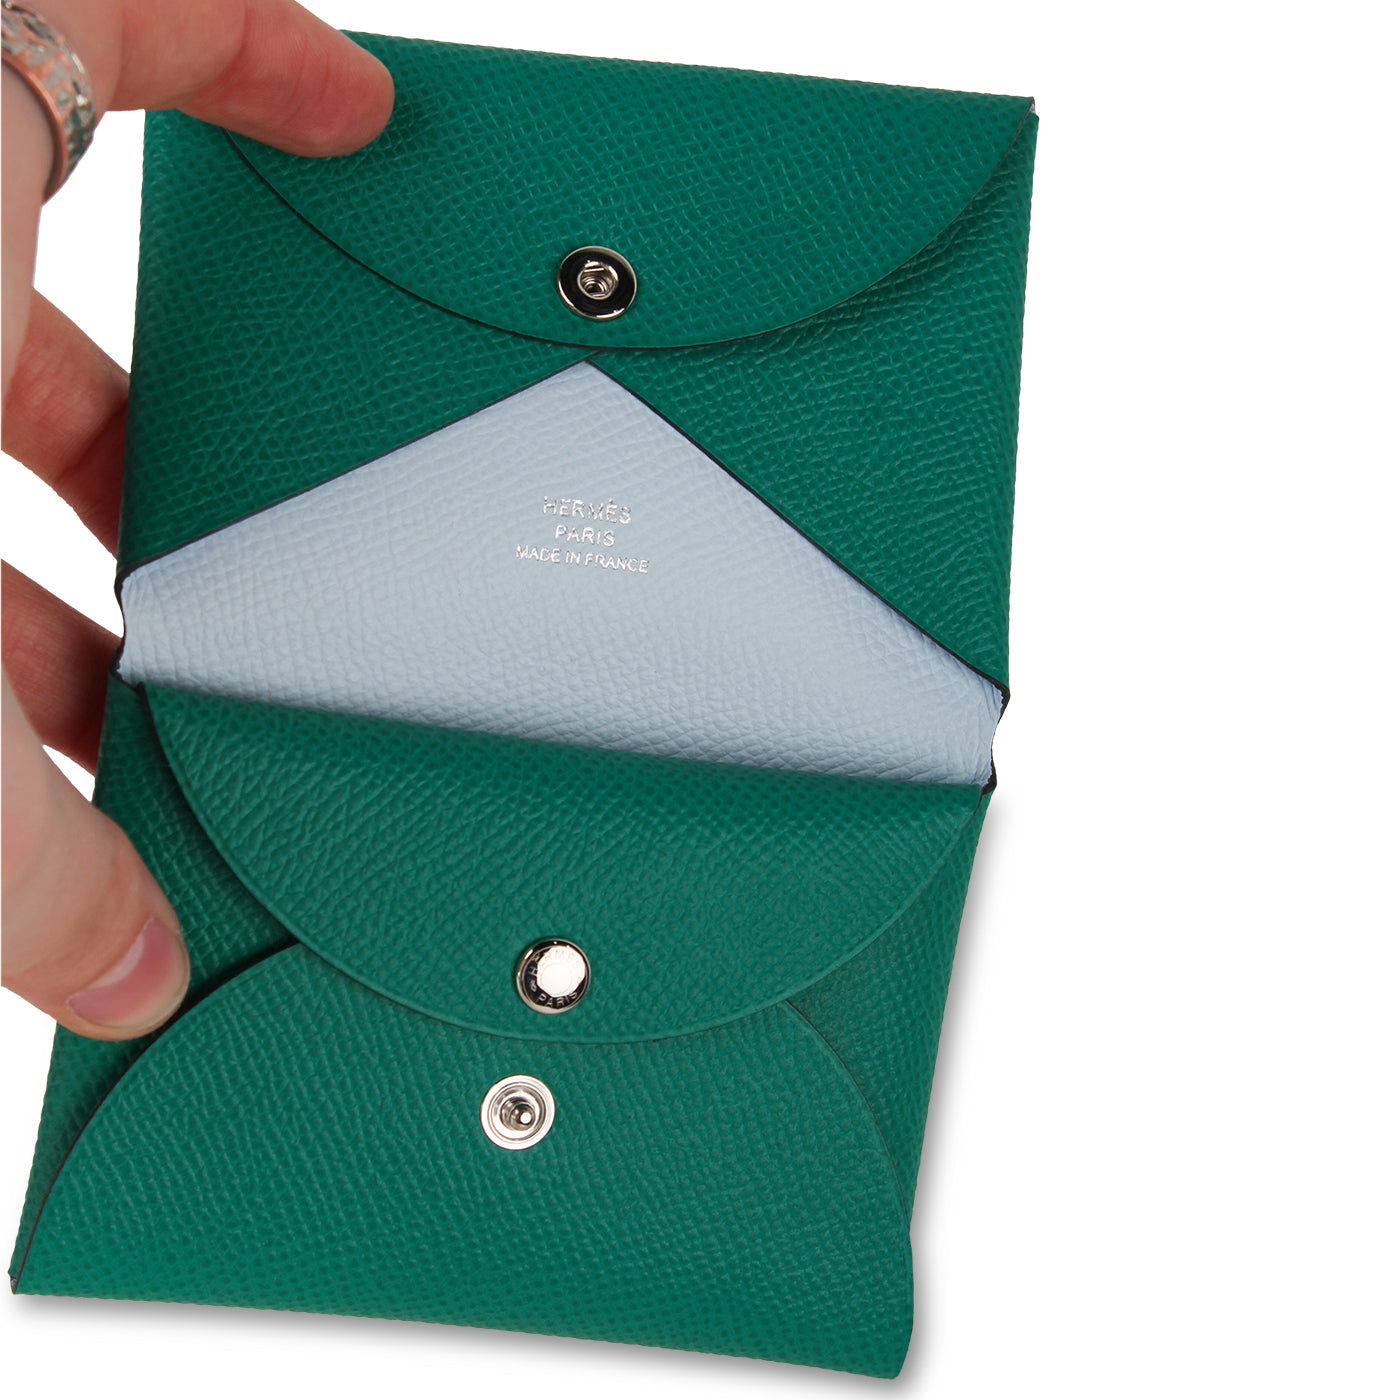 Hermes - Calvi Card Holder - Jade Green - Brand New